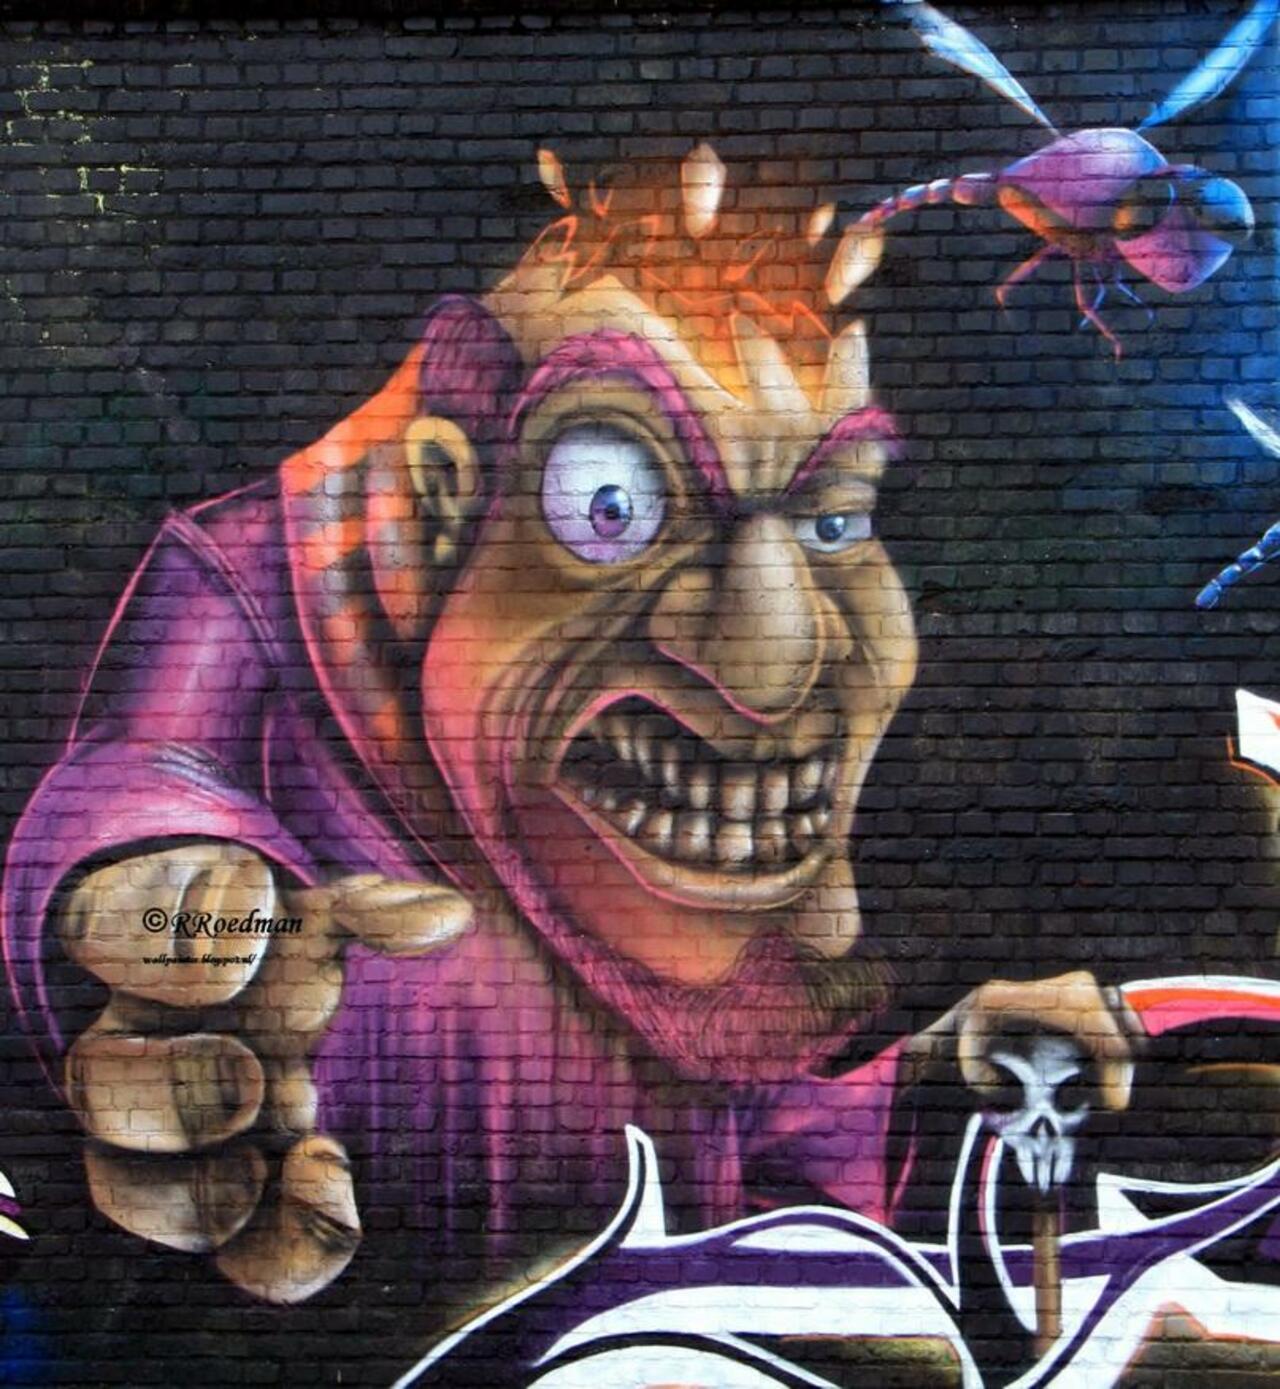 #streetart #graffiti #mural Meeting of styles #Berchem #Antwerpen,2 pics at http://wallpaintss.blogspot.nl http://t.co/XoI1n0tzUz